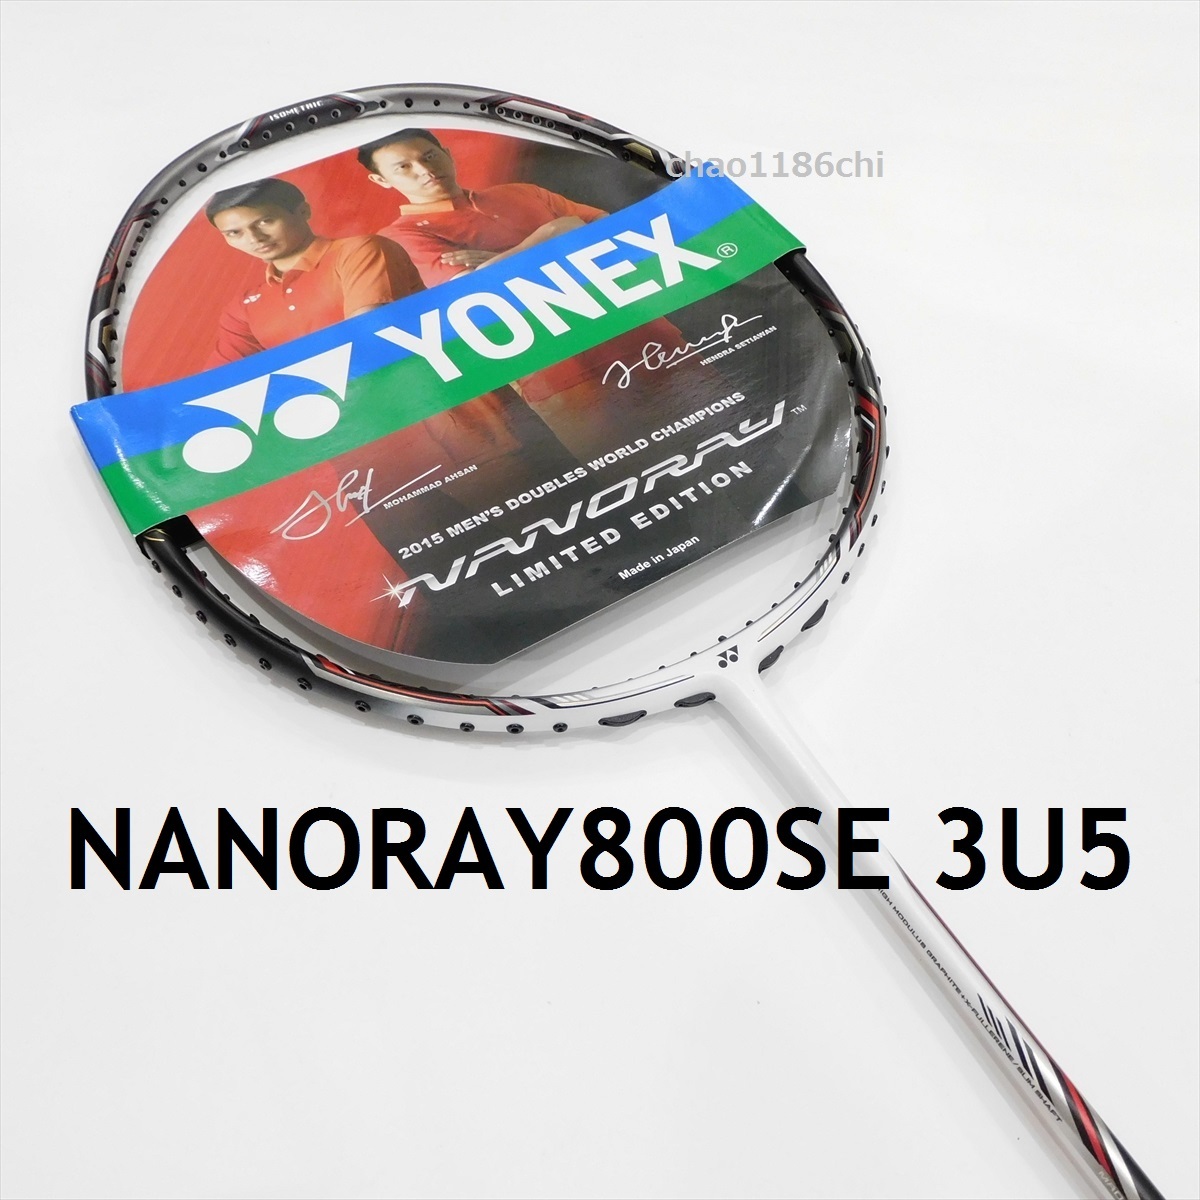 送料込/新品/ヨネックス/限定/3U5/ナノレイ900SE/NANORAY900SE/YONEX/900/ナノレイ900/ナノフレア800/ナノフレア800LT/ナノスピード9900